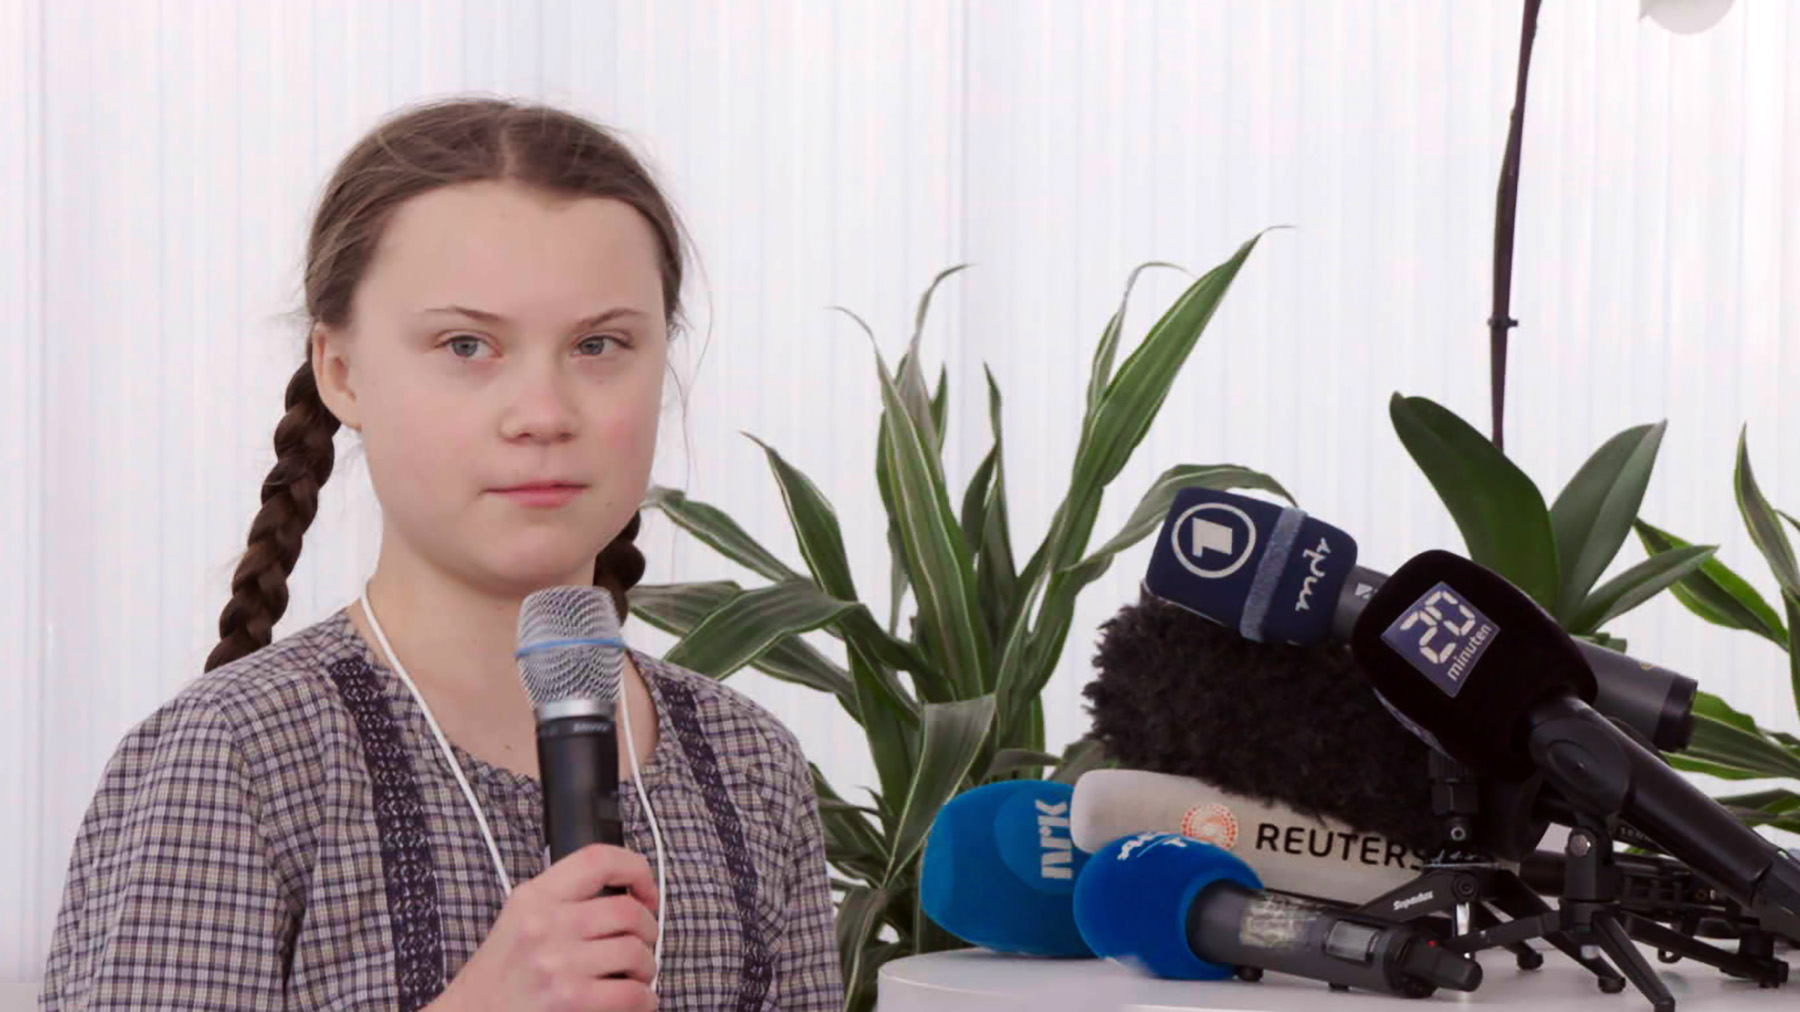 Greta Thunberg, die schwedische Klimaschutzaktivistin, bei einer Veranstaltung auf dem Weltwirtschaftsforum in Davos 2019